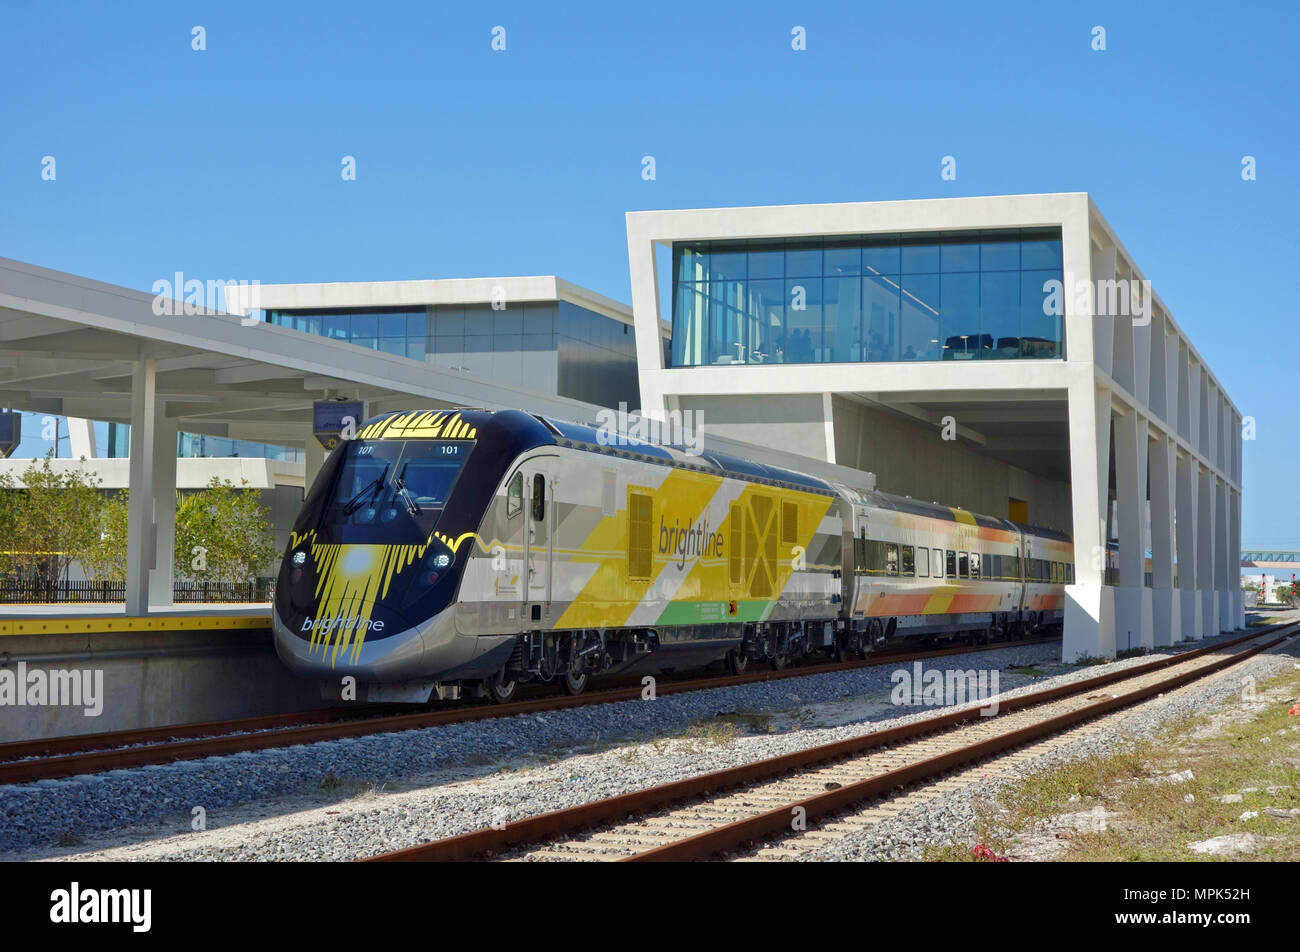 Vista del tren Brightline, un diesel-eléctrico del sistema ferroviario de alta velocidad, a la estación de tren de West Palm Beach, en Florida, Estados Unidos. Foto de stock